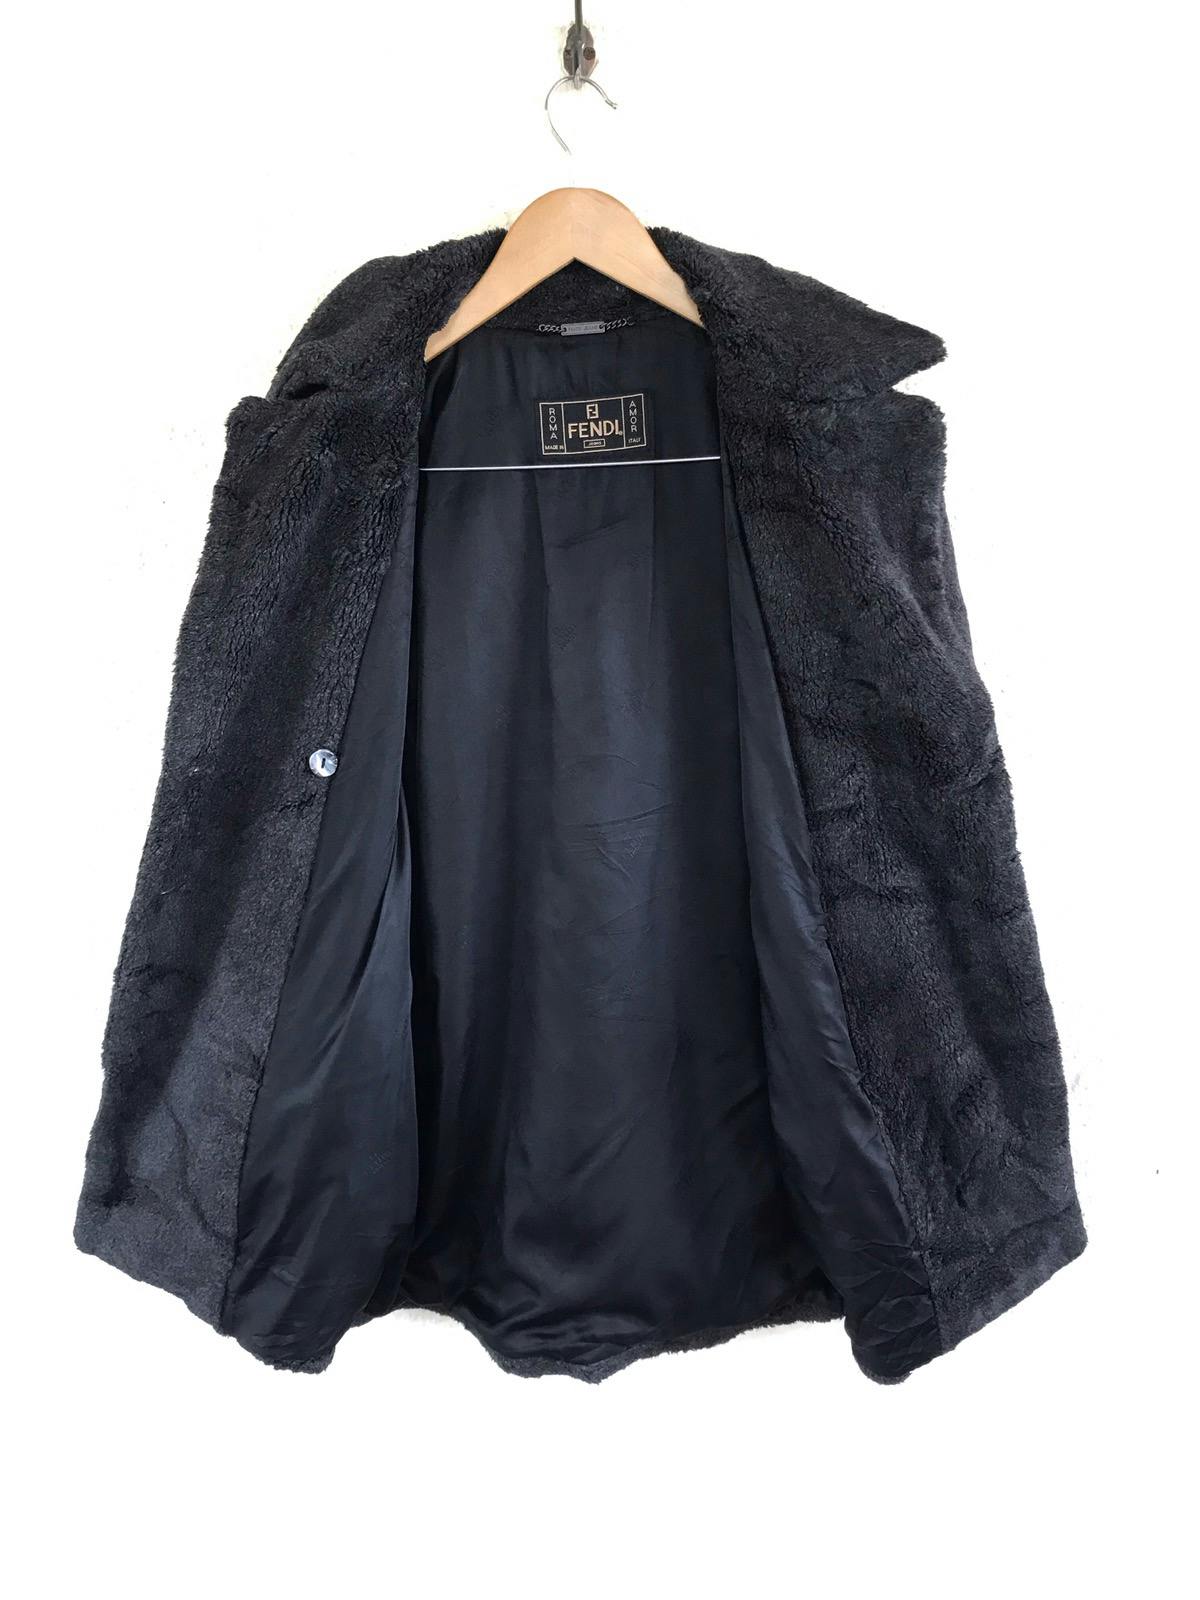 FENDI Jeans Boa Coat/ Fur Jacket Made in Italy - 11